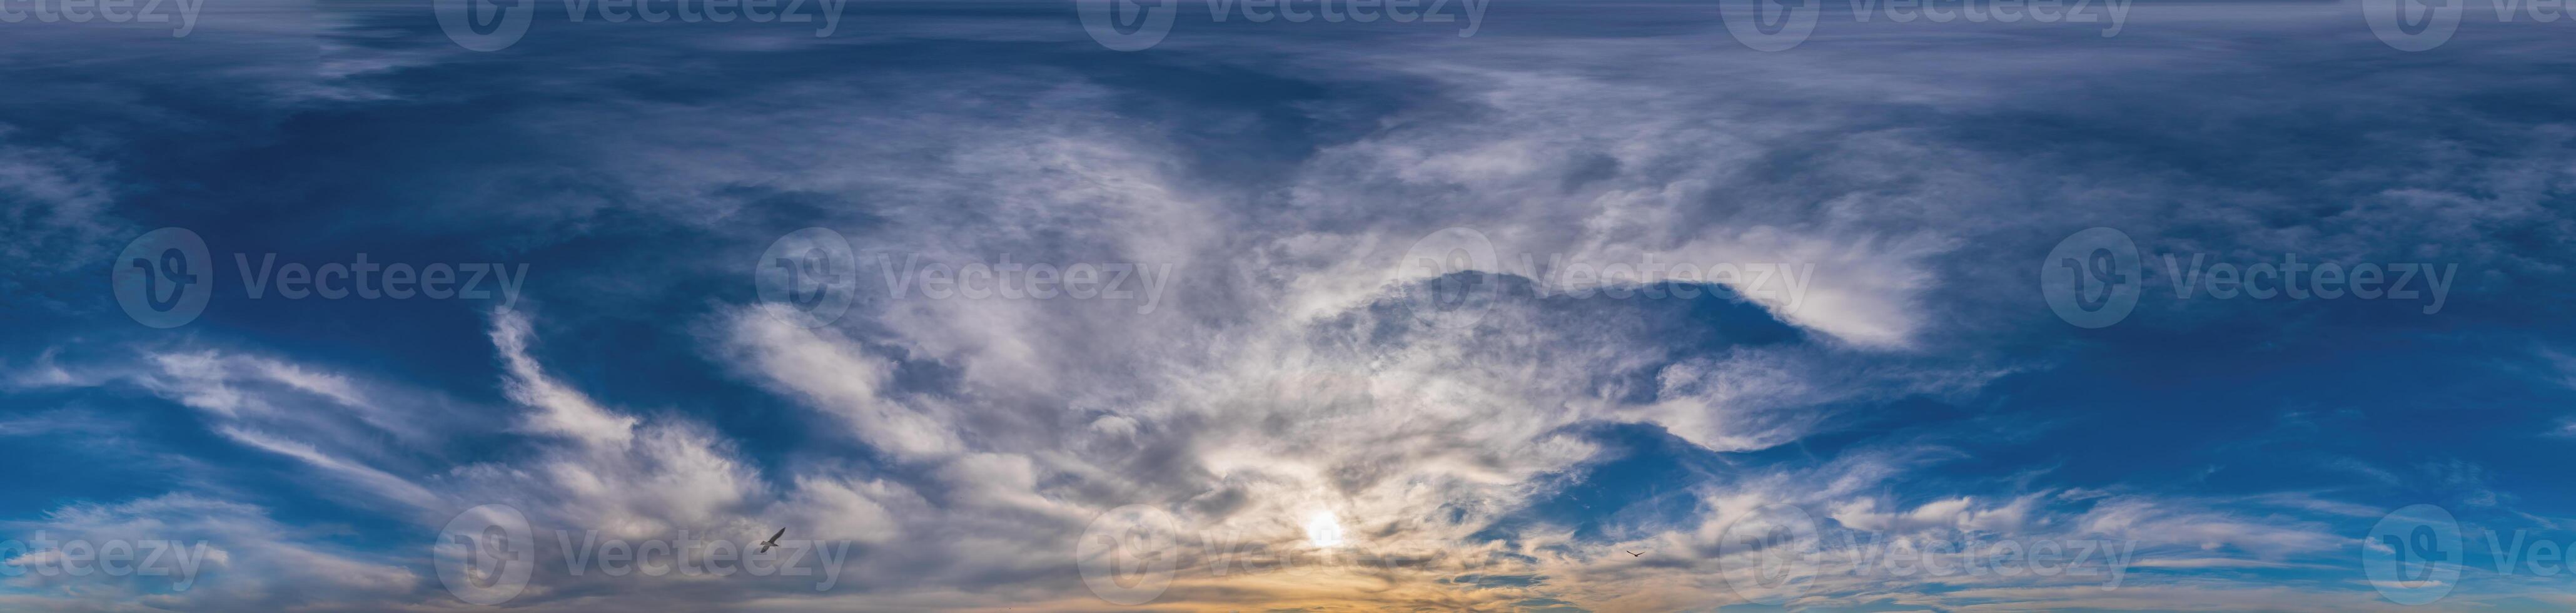 zonsondergang lucht panorama met cirrus wolken in naadloos bolvormig equirectangular formaat. compleet zenit voor gebruik in 3d grafiek, spel en voor composieten in antenne dar 360 mate panorama's net zo een lucht koepel foto